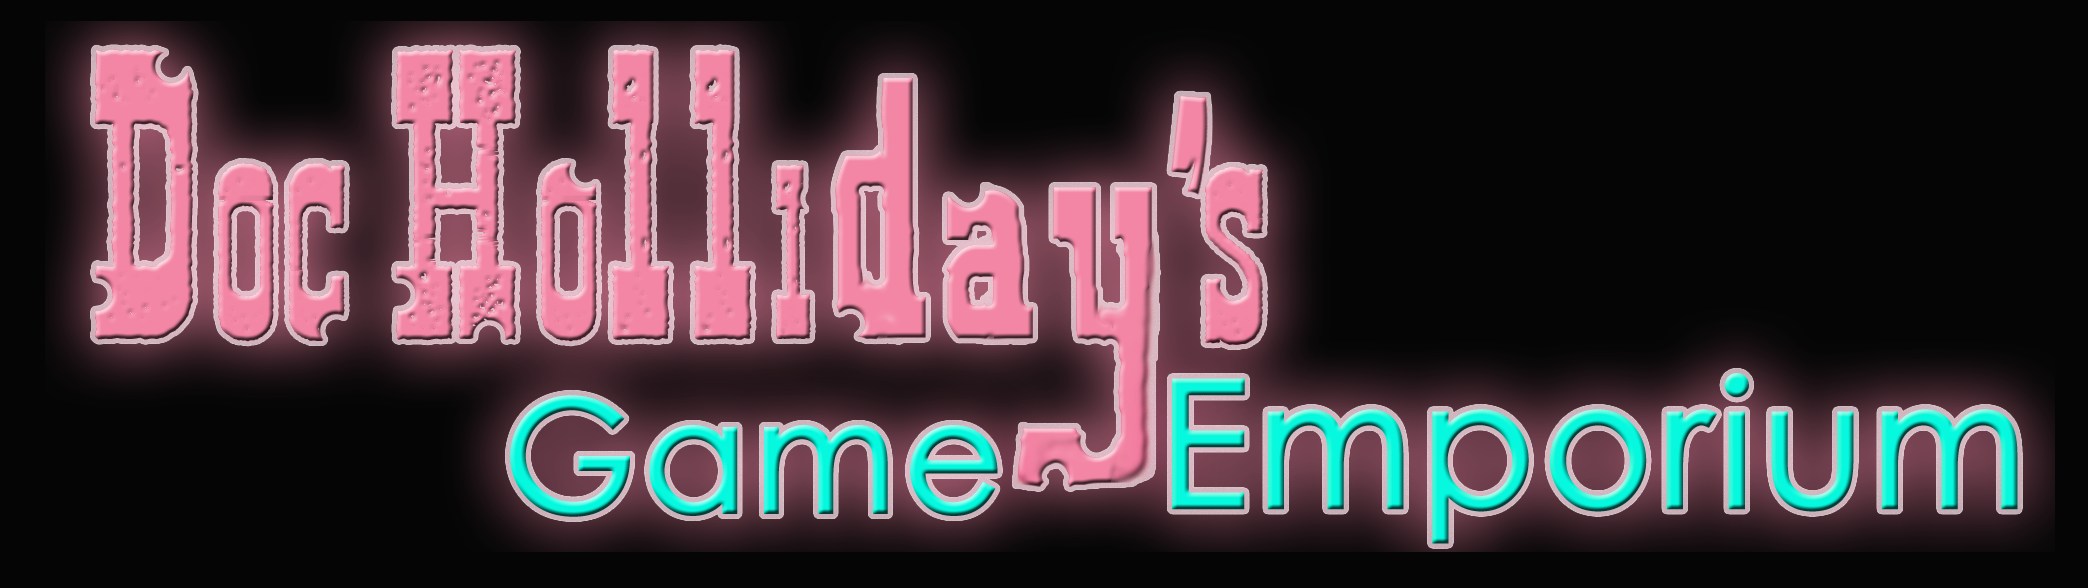 Doc Holliday's Game Emporium Neon Arcade Sign